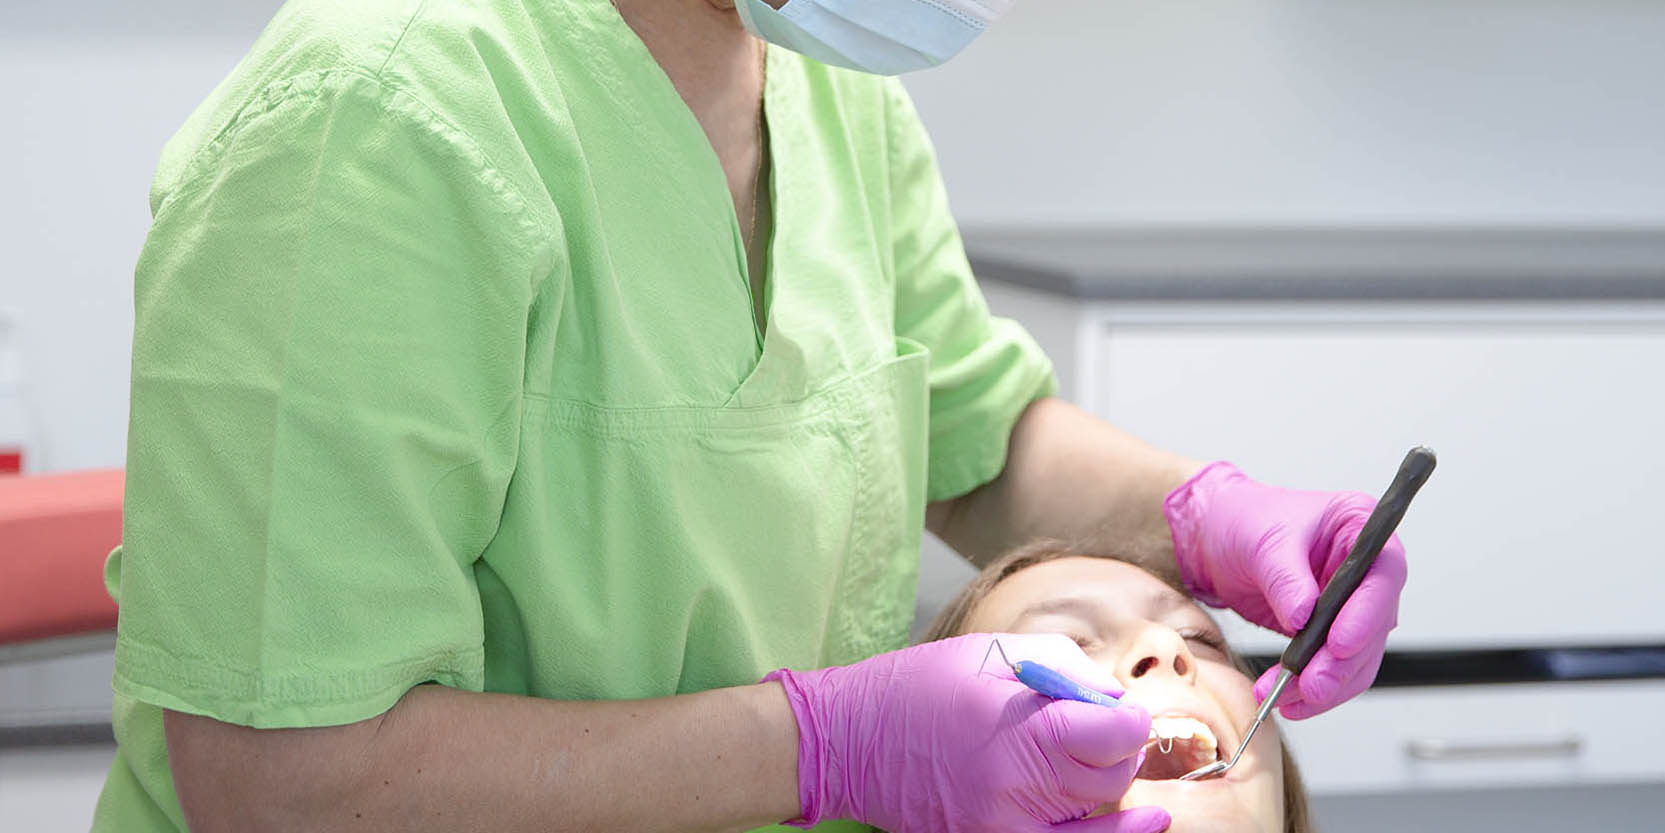 Adrianna Süveg, tandläkare i Malmö använder medicinsk laser för avancerad tandvård